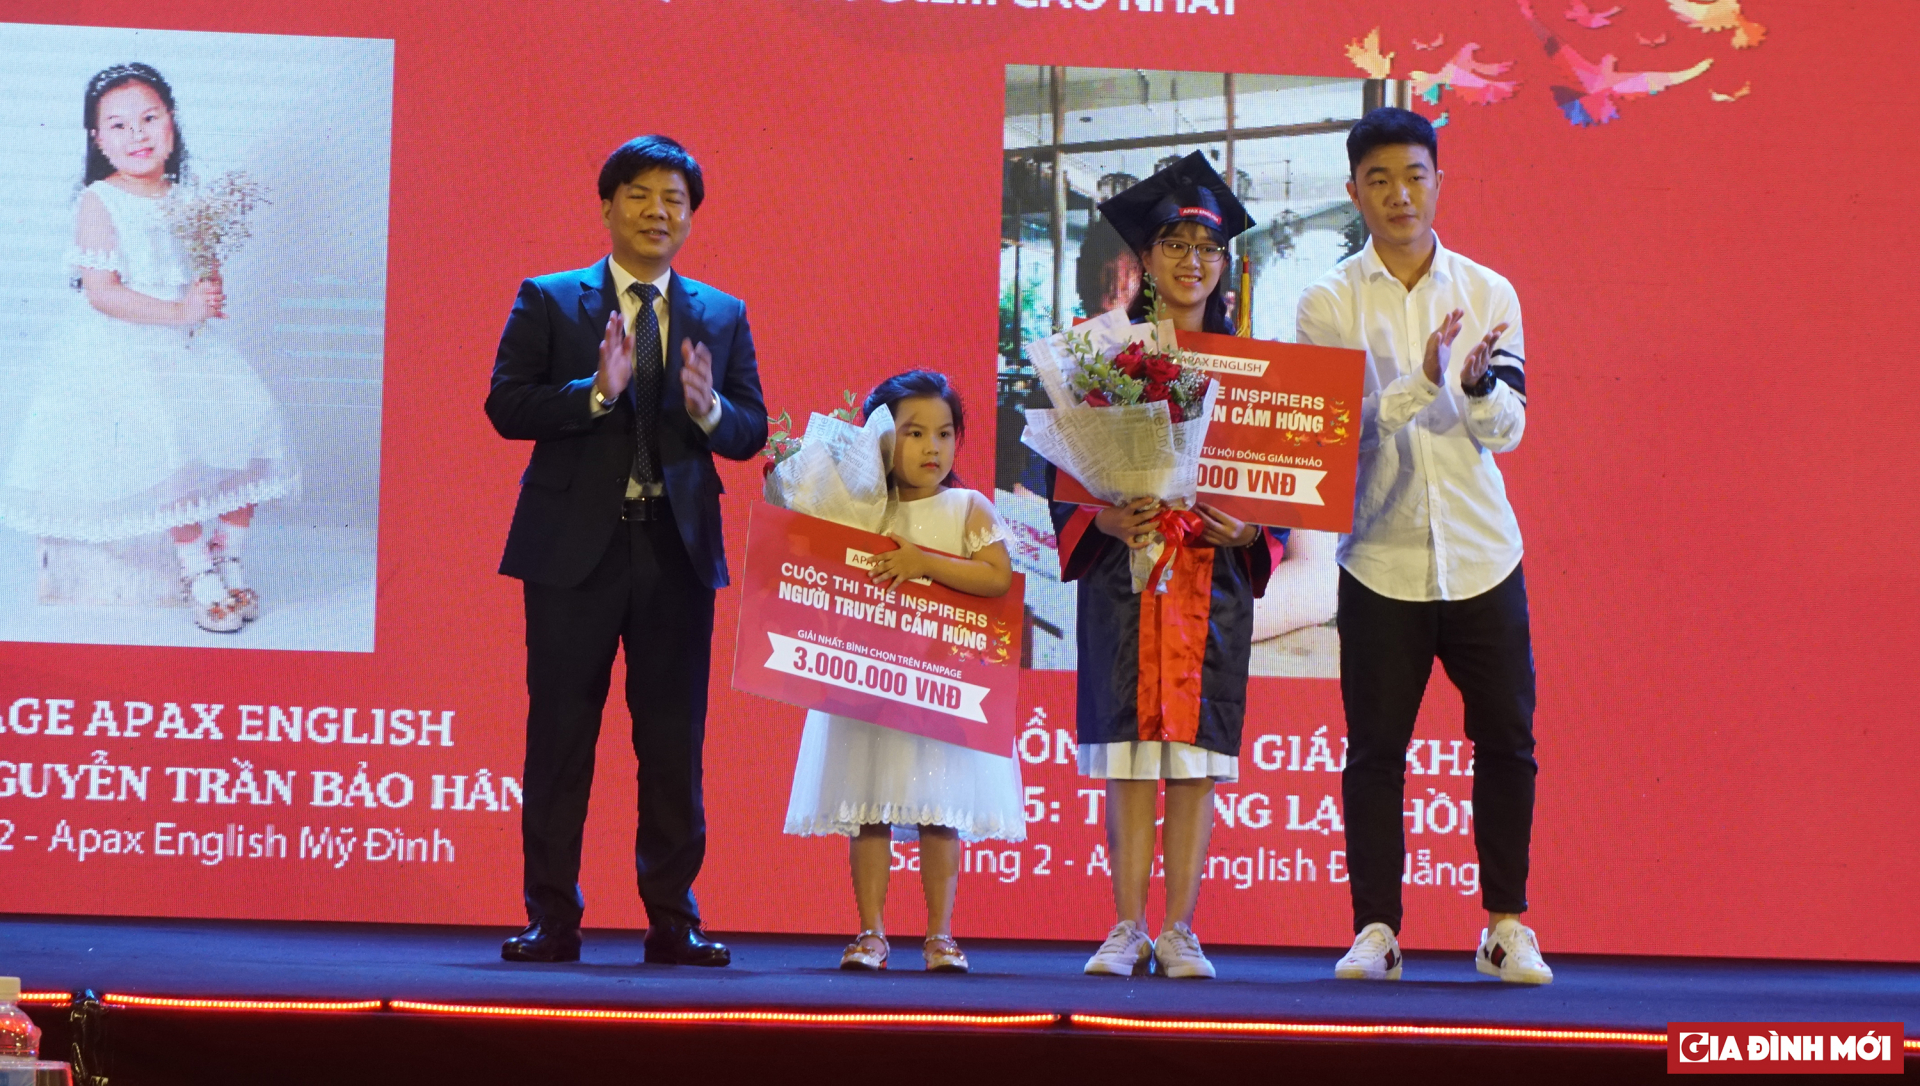 Shark Thủy trao 02 giải Nhất cuộc thi “The Inspirers - Người truyền cảm hứng” cho bé Nguyễn Trần Bảo Hân và bé Trương Lạc Hồng.